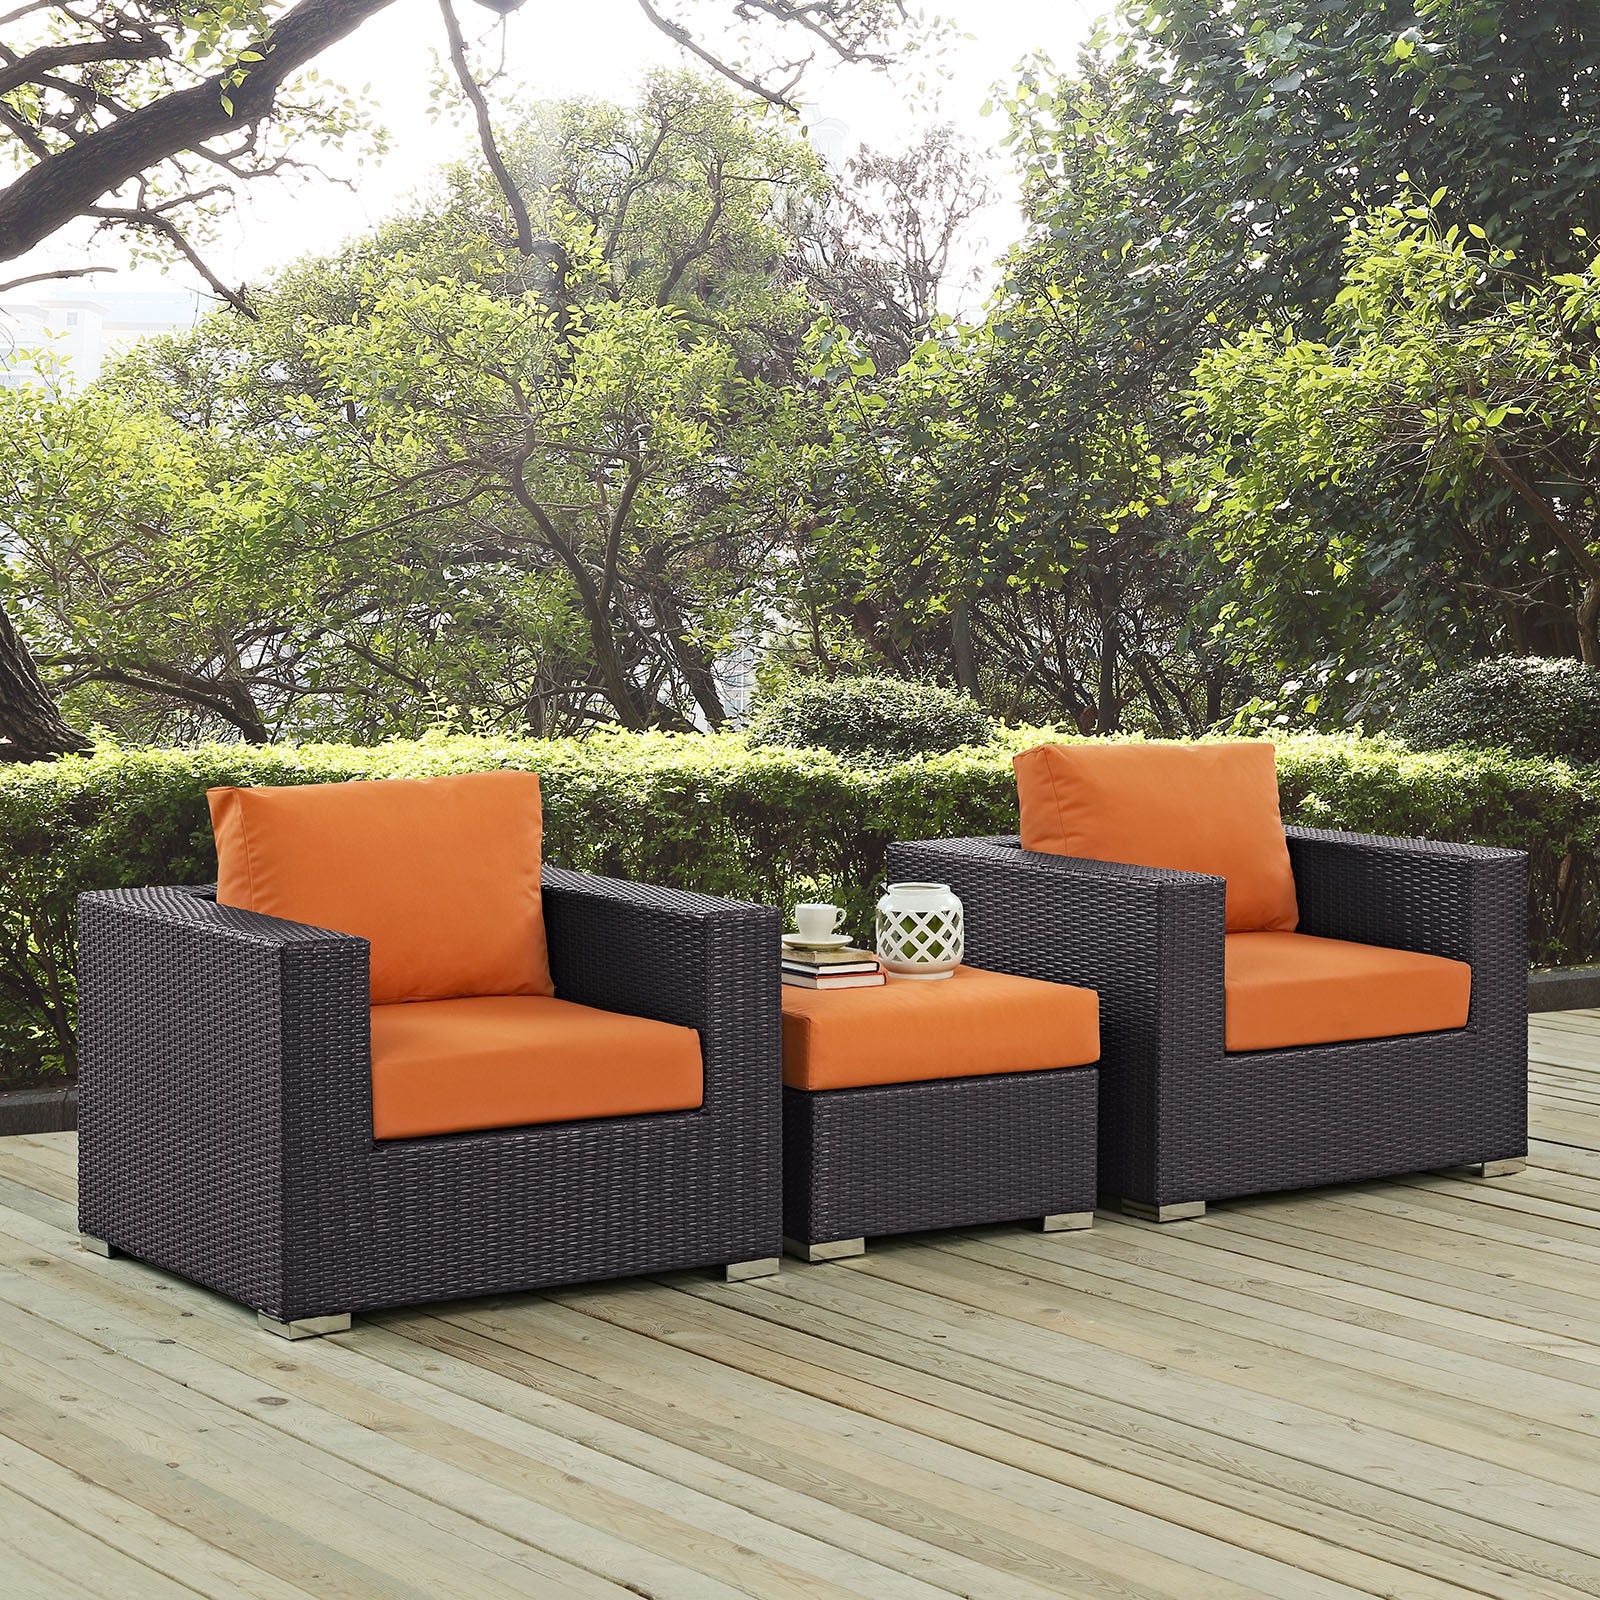 Modway Outdoor Conversation Sets - Convene 3 Piece Outdoor Patio Sofa Set Espresso Orange